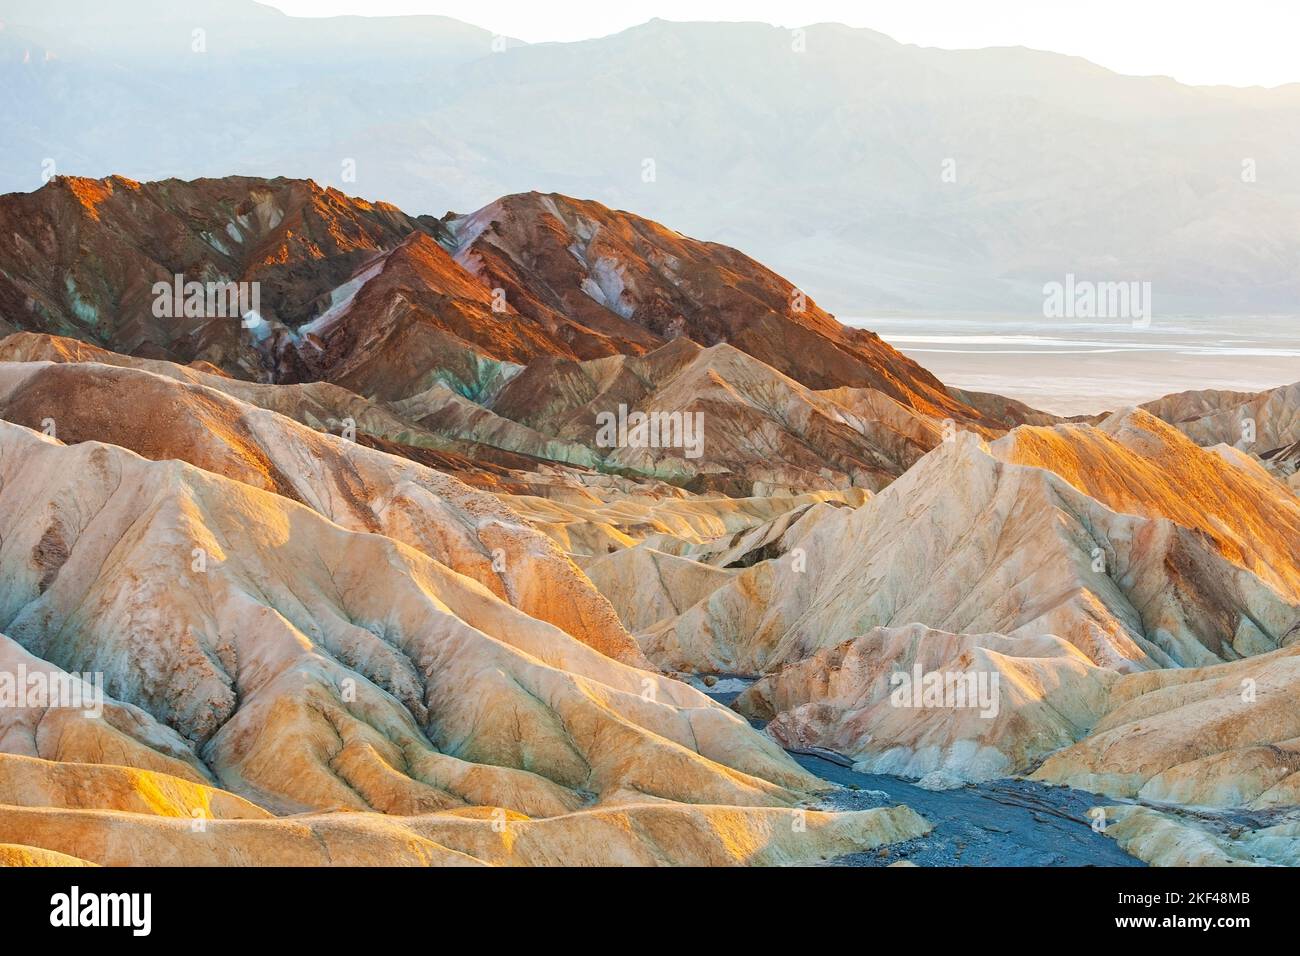 Farbige Gesteinsformationen im Abendlicht am Zabriskie Point, Zabriske Point, Death Valley Nationalpark, USA, Nordamerika Foto Stock